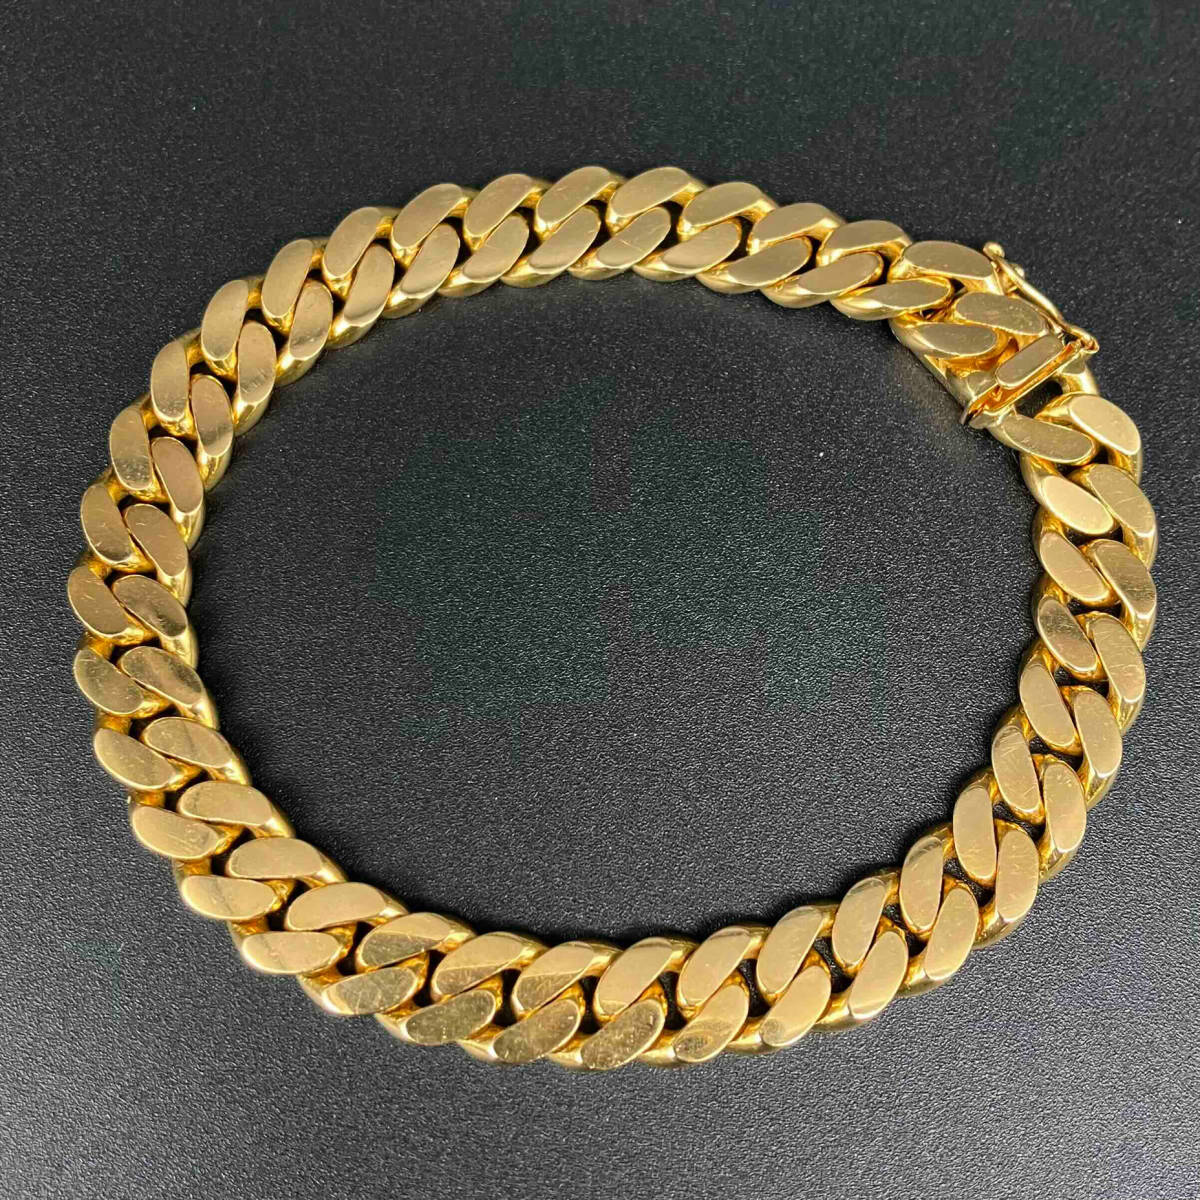 K18 bracele 40.8g Gold gold men's accessory lady's accessory 